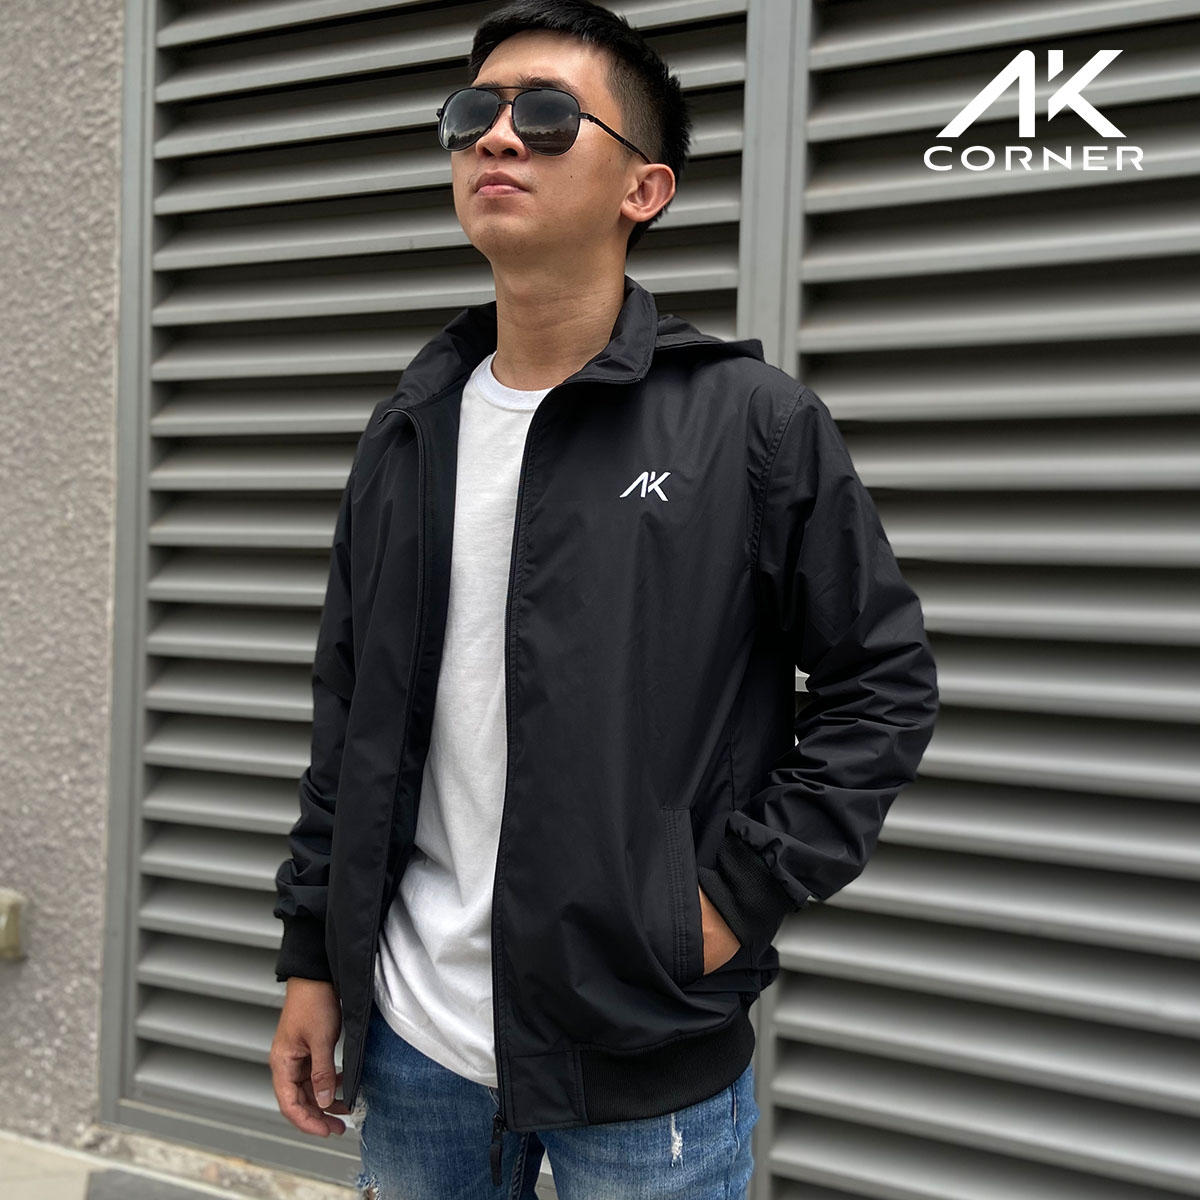 Áo khoác nam có nón AK01, vải Xi Nhật cao cấp dày dặn, chống tia UV, chống nắng, có lớp cách nhiệt bên trong giữ ấm tốt